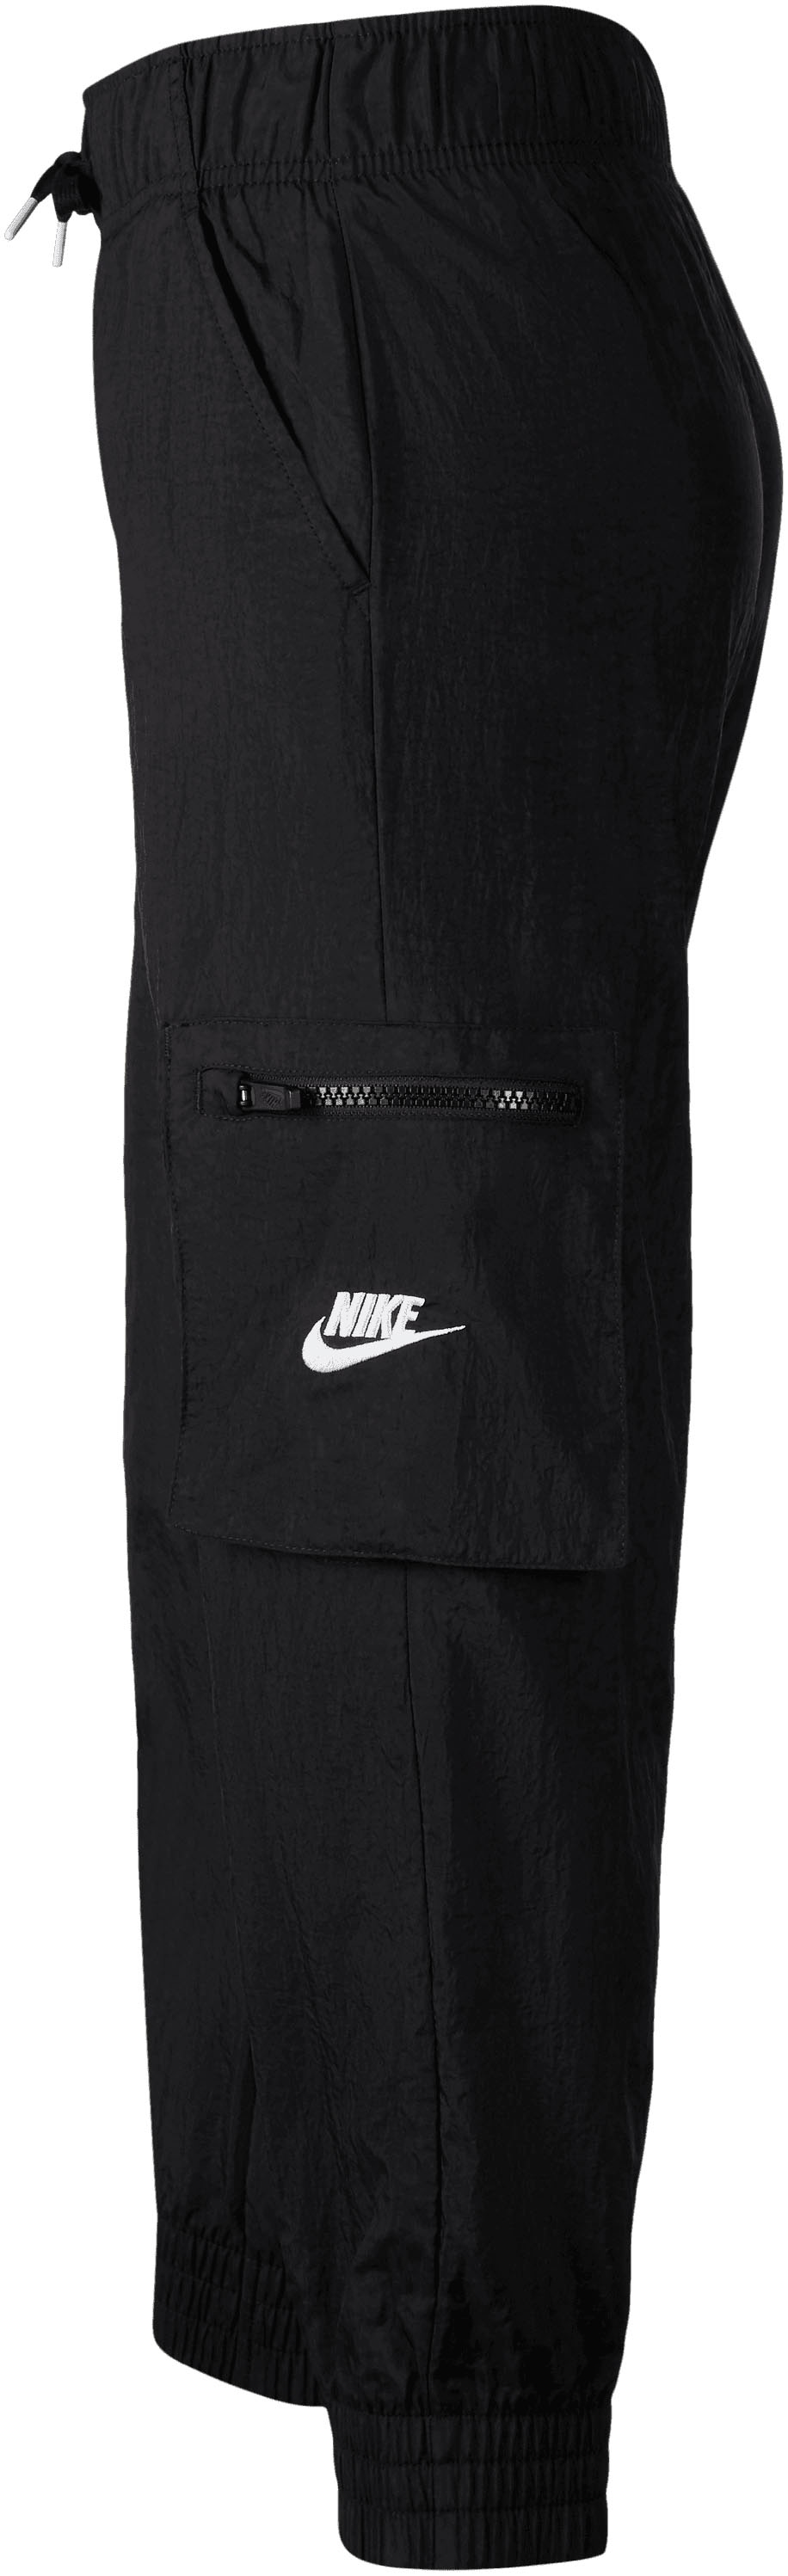 Sporthose »Big Kids\' bei (Girls\') Woven Sportswear Cargo Pants« Nike